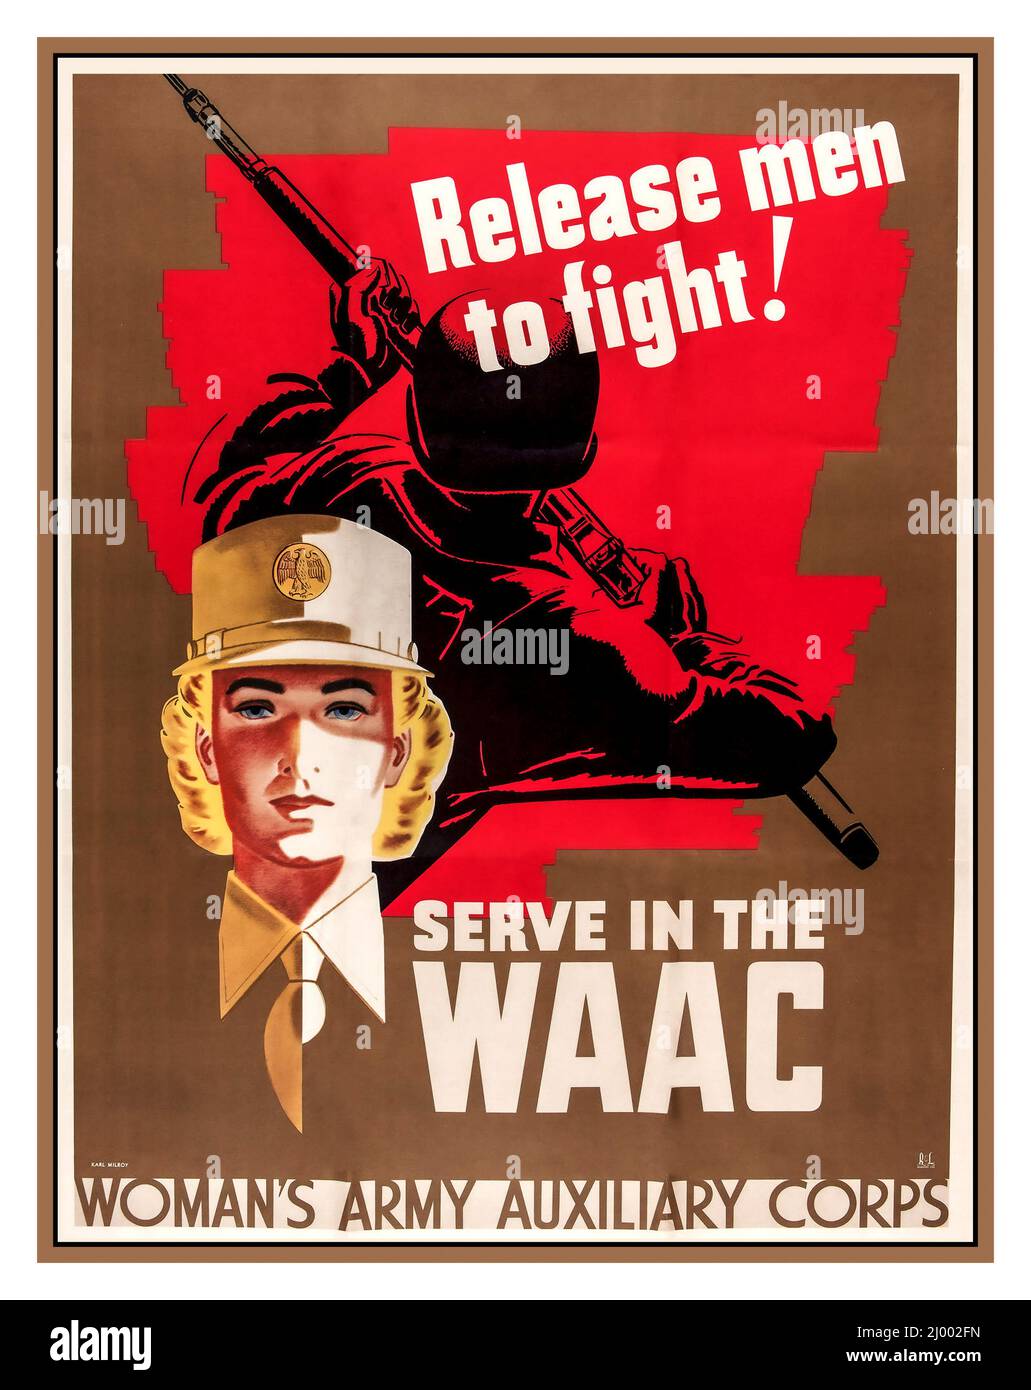 WW2 1942 USA US-amerikanisches Rekrutierungsplakat 'Männer zum Kampf freilassen' 'DIENST IN DER WAAC' Hilfskorps der Frauenarmee Vereinigte Staaten von Amerika Zweiter Weltkrieg Stockfoto